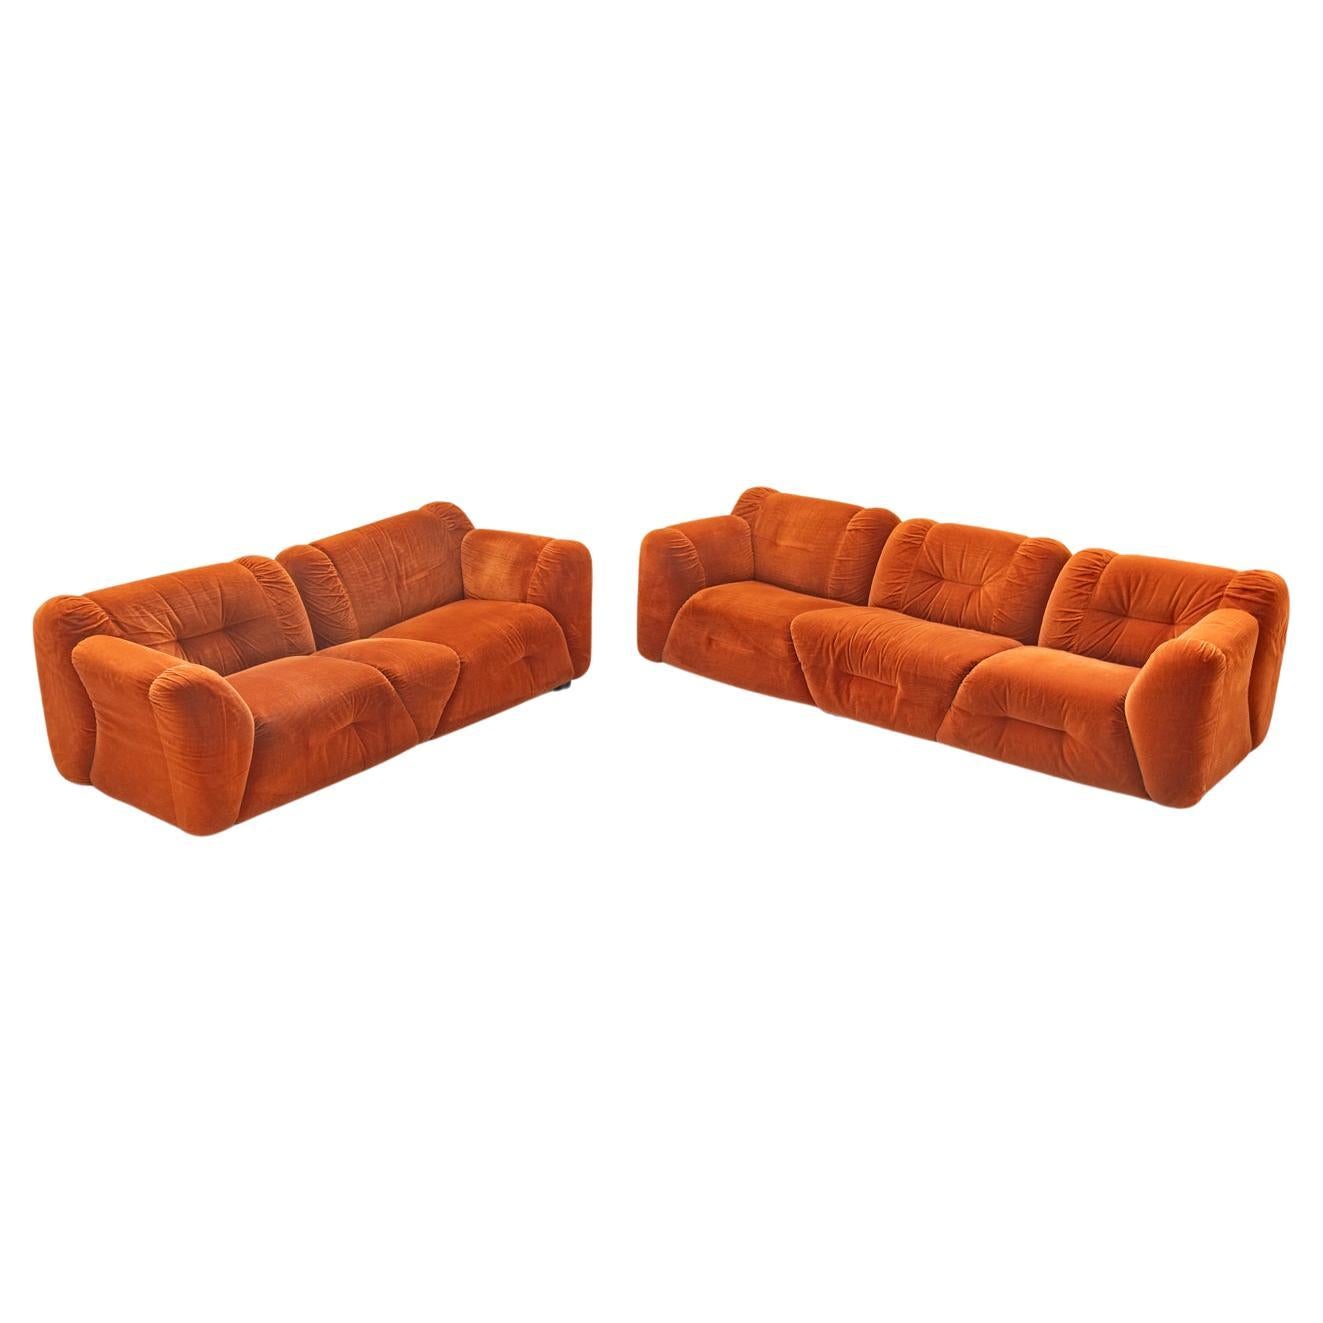 Orangefarbene Chenille-Sofas, zwei- und dreisitzig, 2er-Set, 1970er Jahre